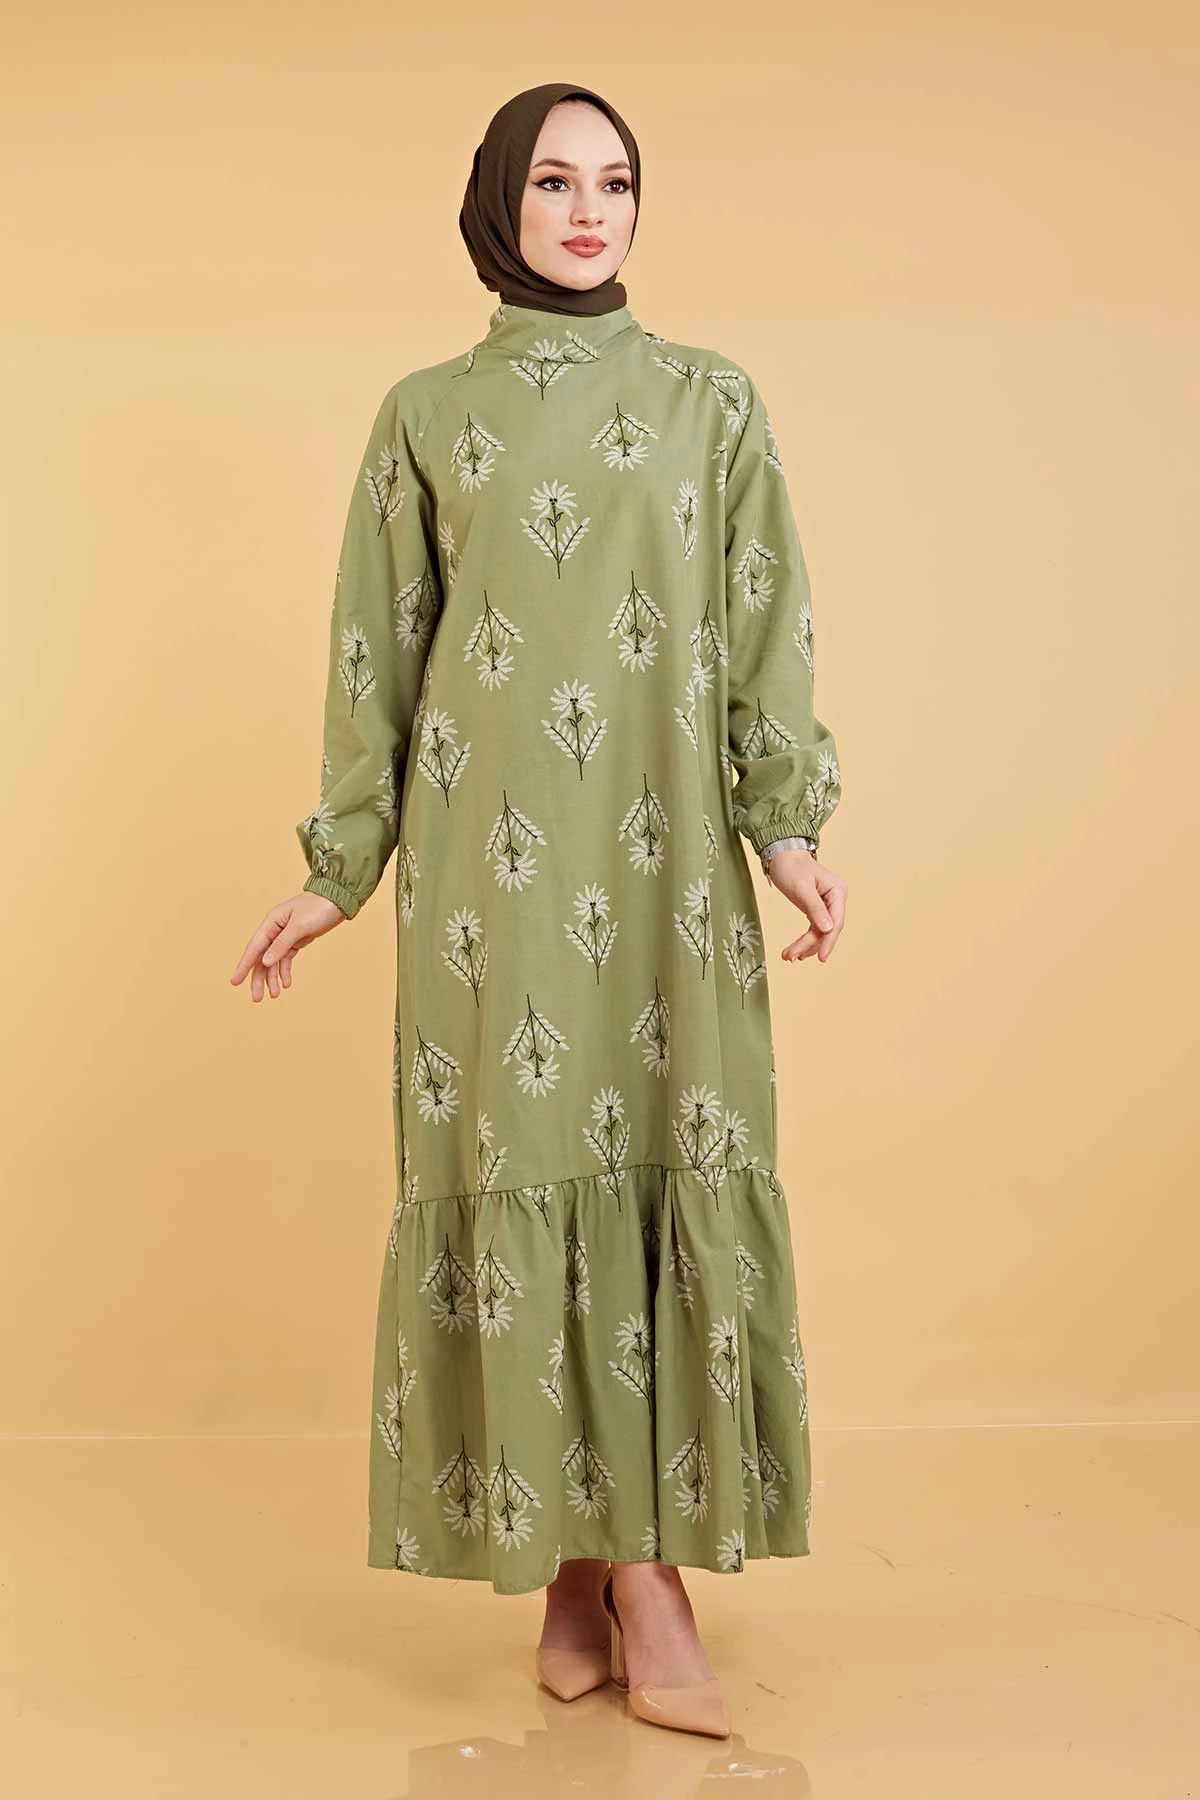 Frilled hem Printed Dress SAG Pine Nuts Winter Autumn 2021 Muslim Women Hijab headscarf Islamic Turkey